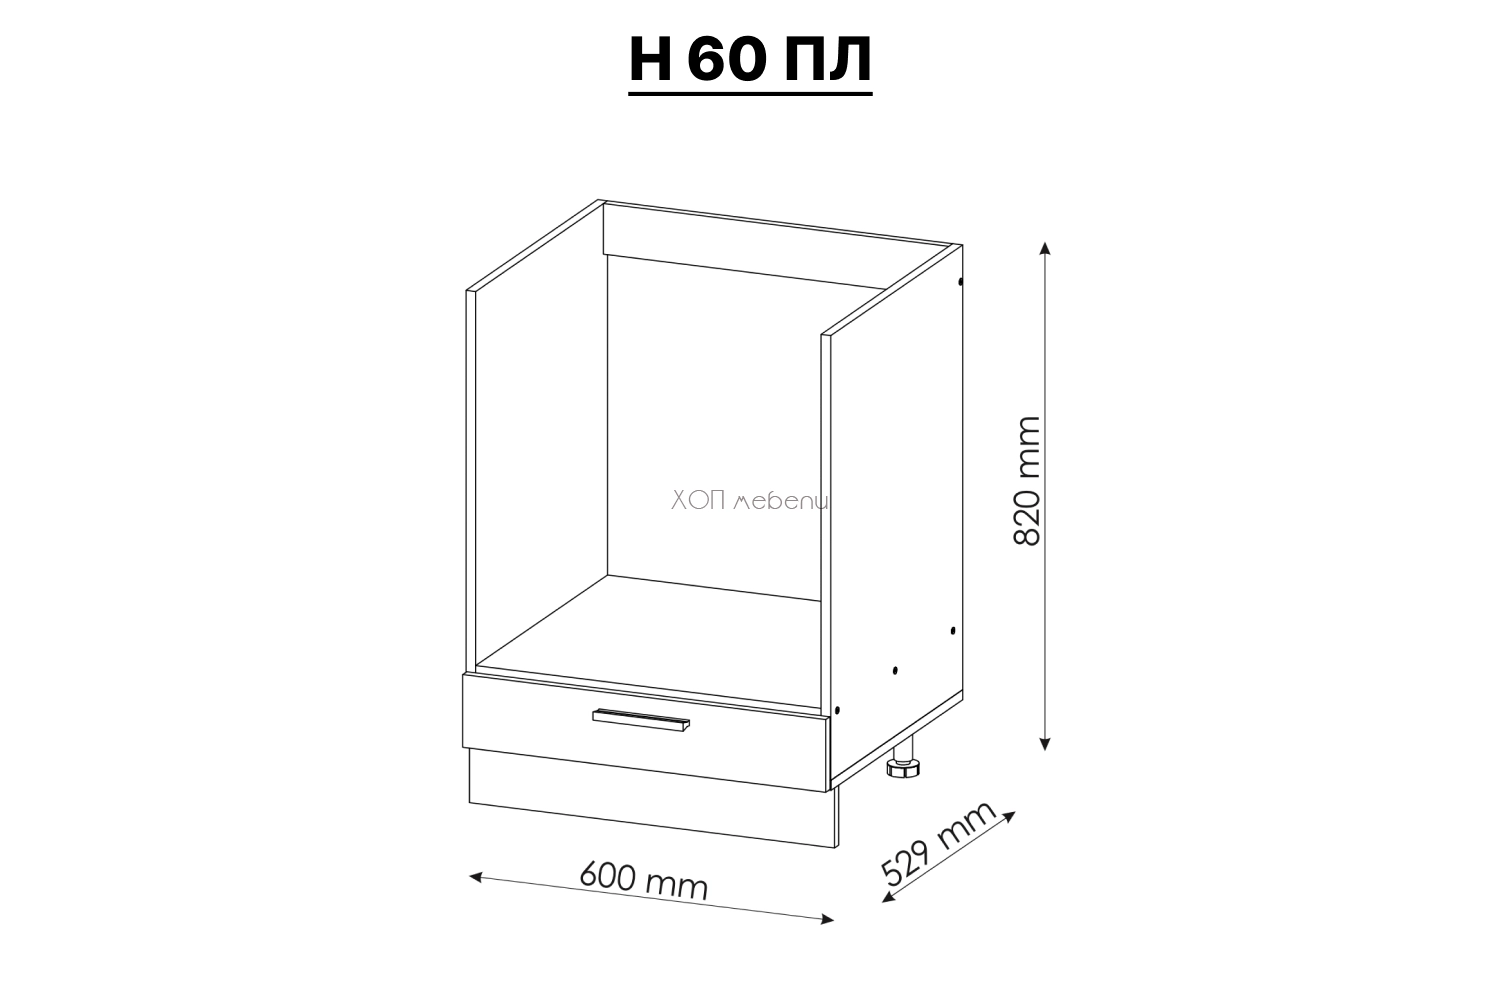 Размери на Шкаф за печка Алина H60ПЛ ID 7915